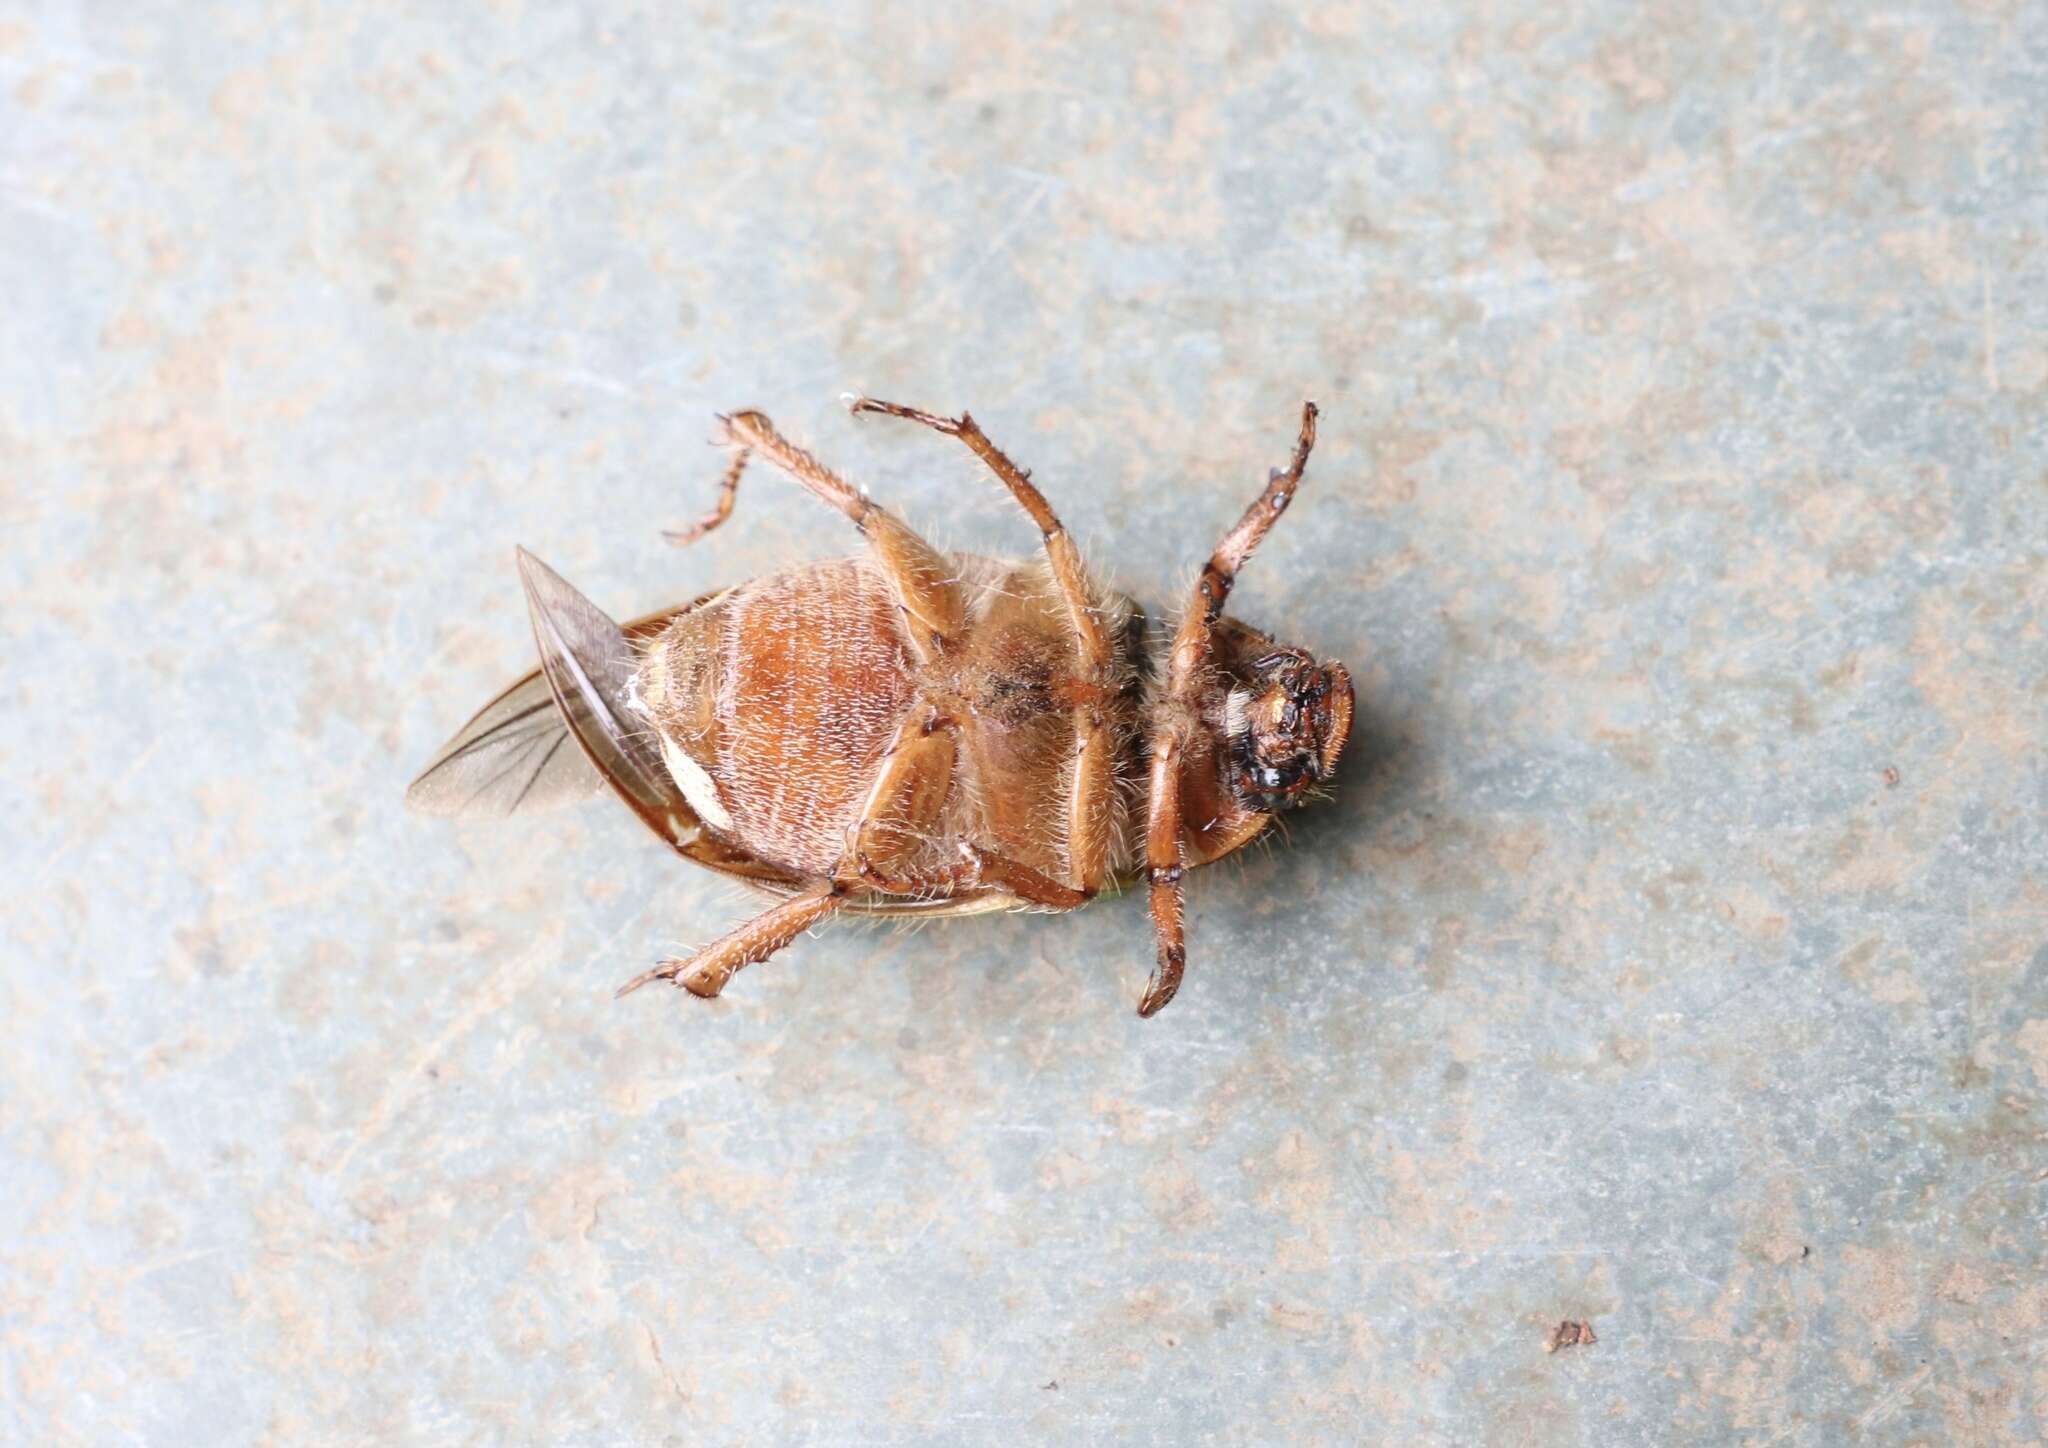 Image of Beetle